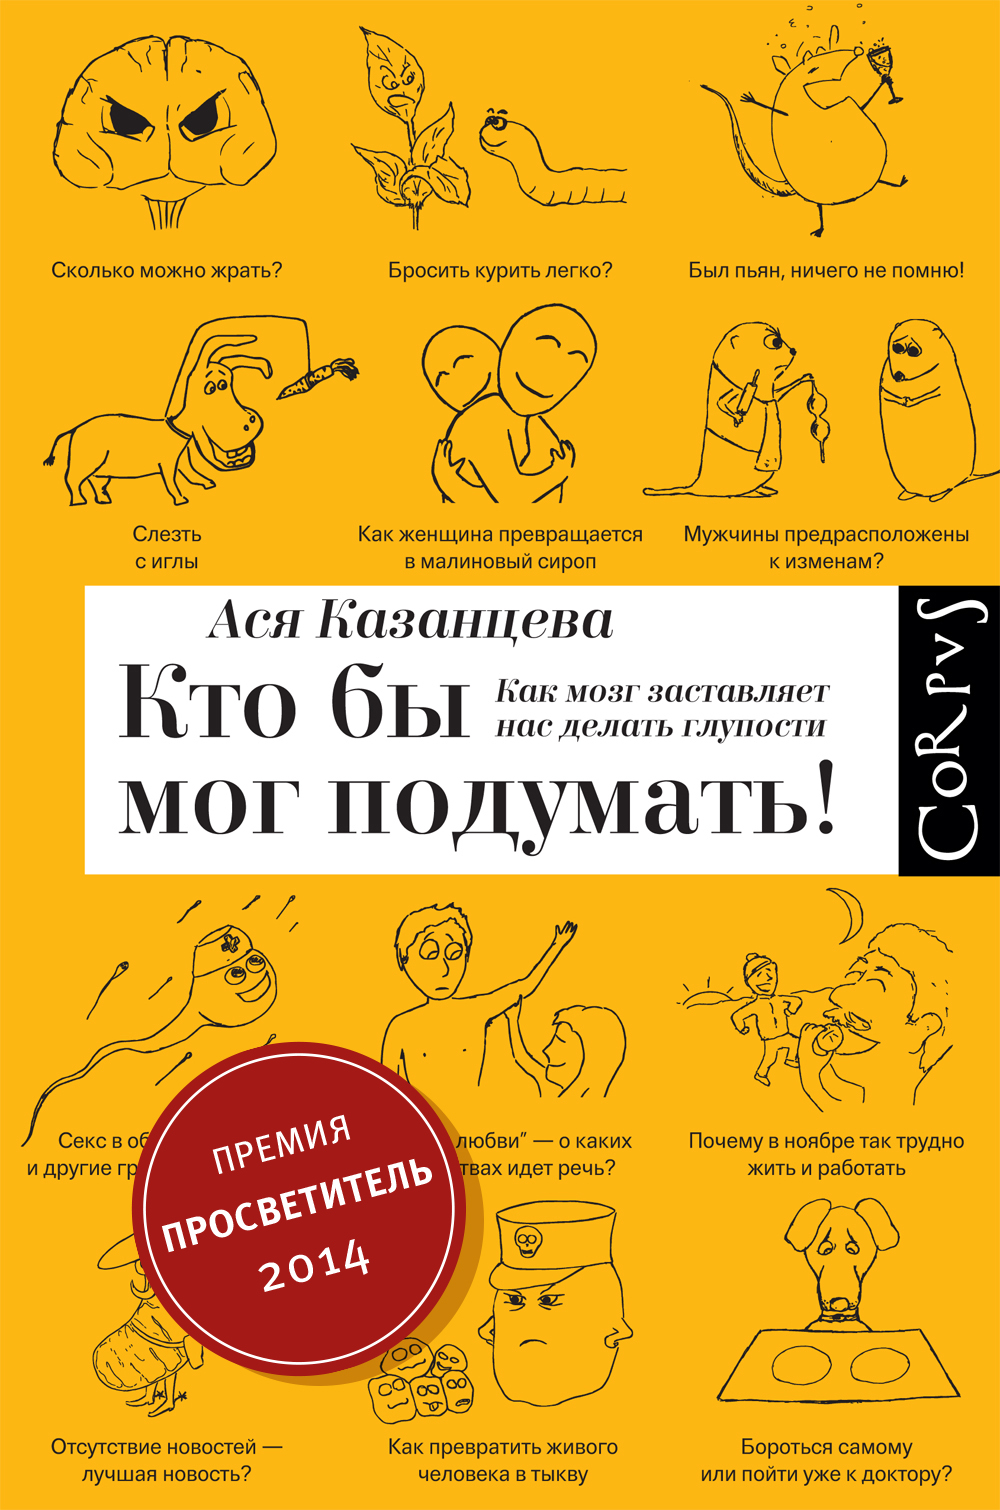 Book “Кто бы мог подумать!” by Ася Казанцева — February 3, 2014